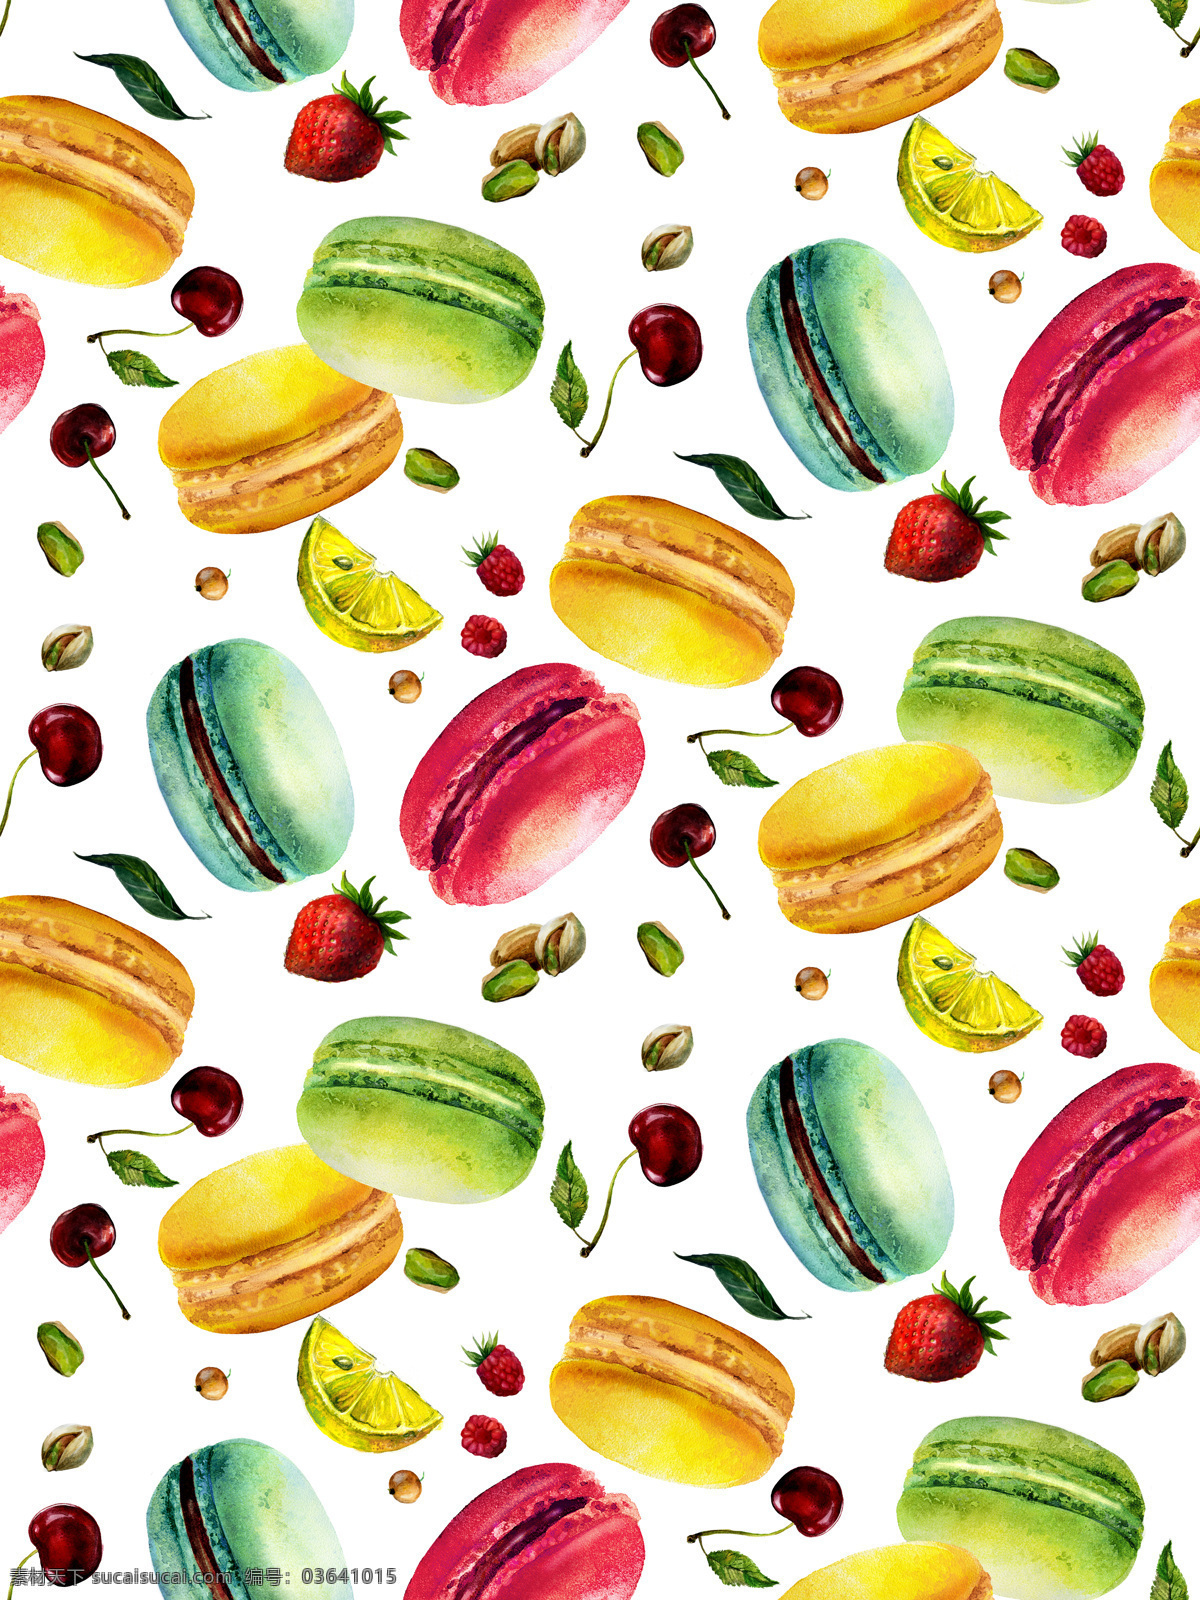 水彩 绘 马卡 龙 水果 背景 底纹 水彩绘 马卡龙 草莓 底纹边框 背景底纹